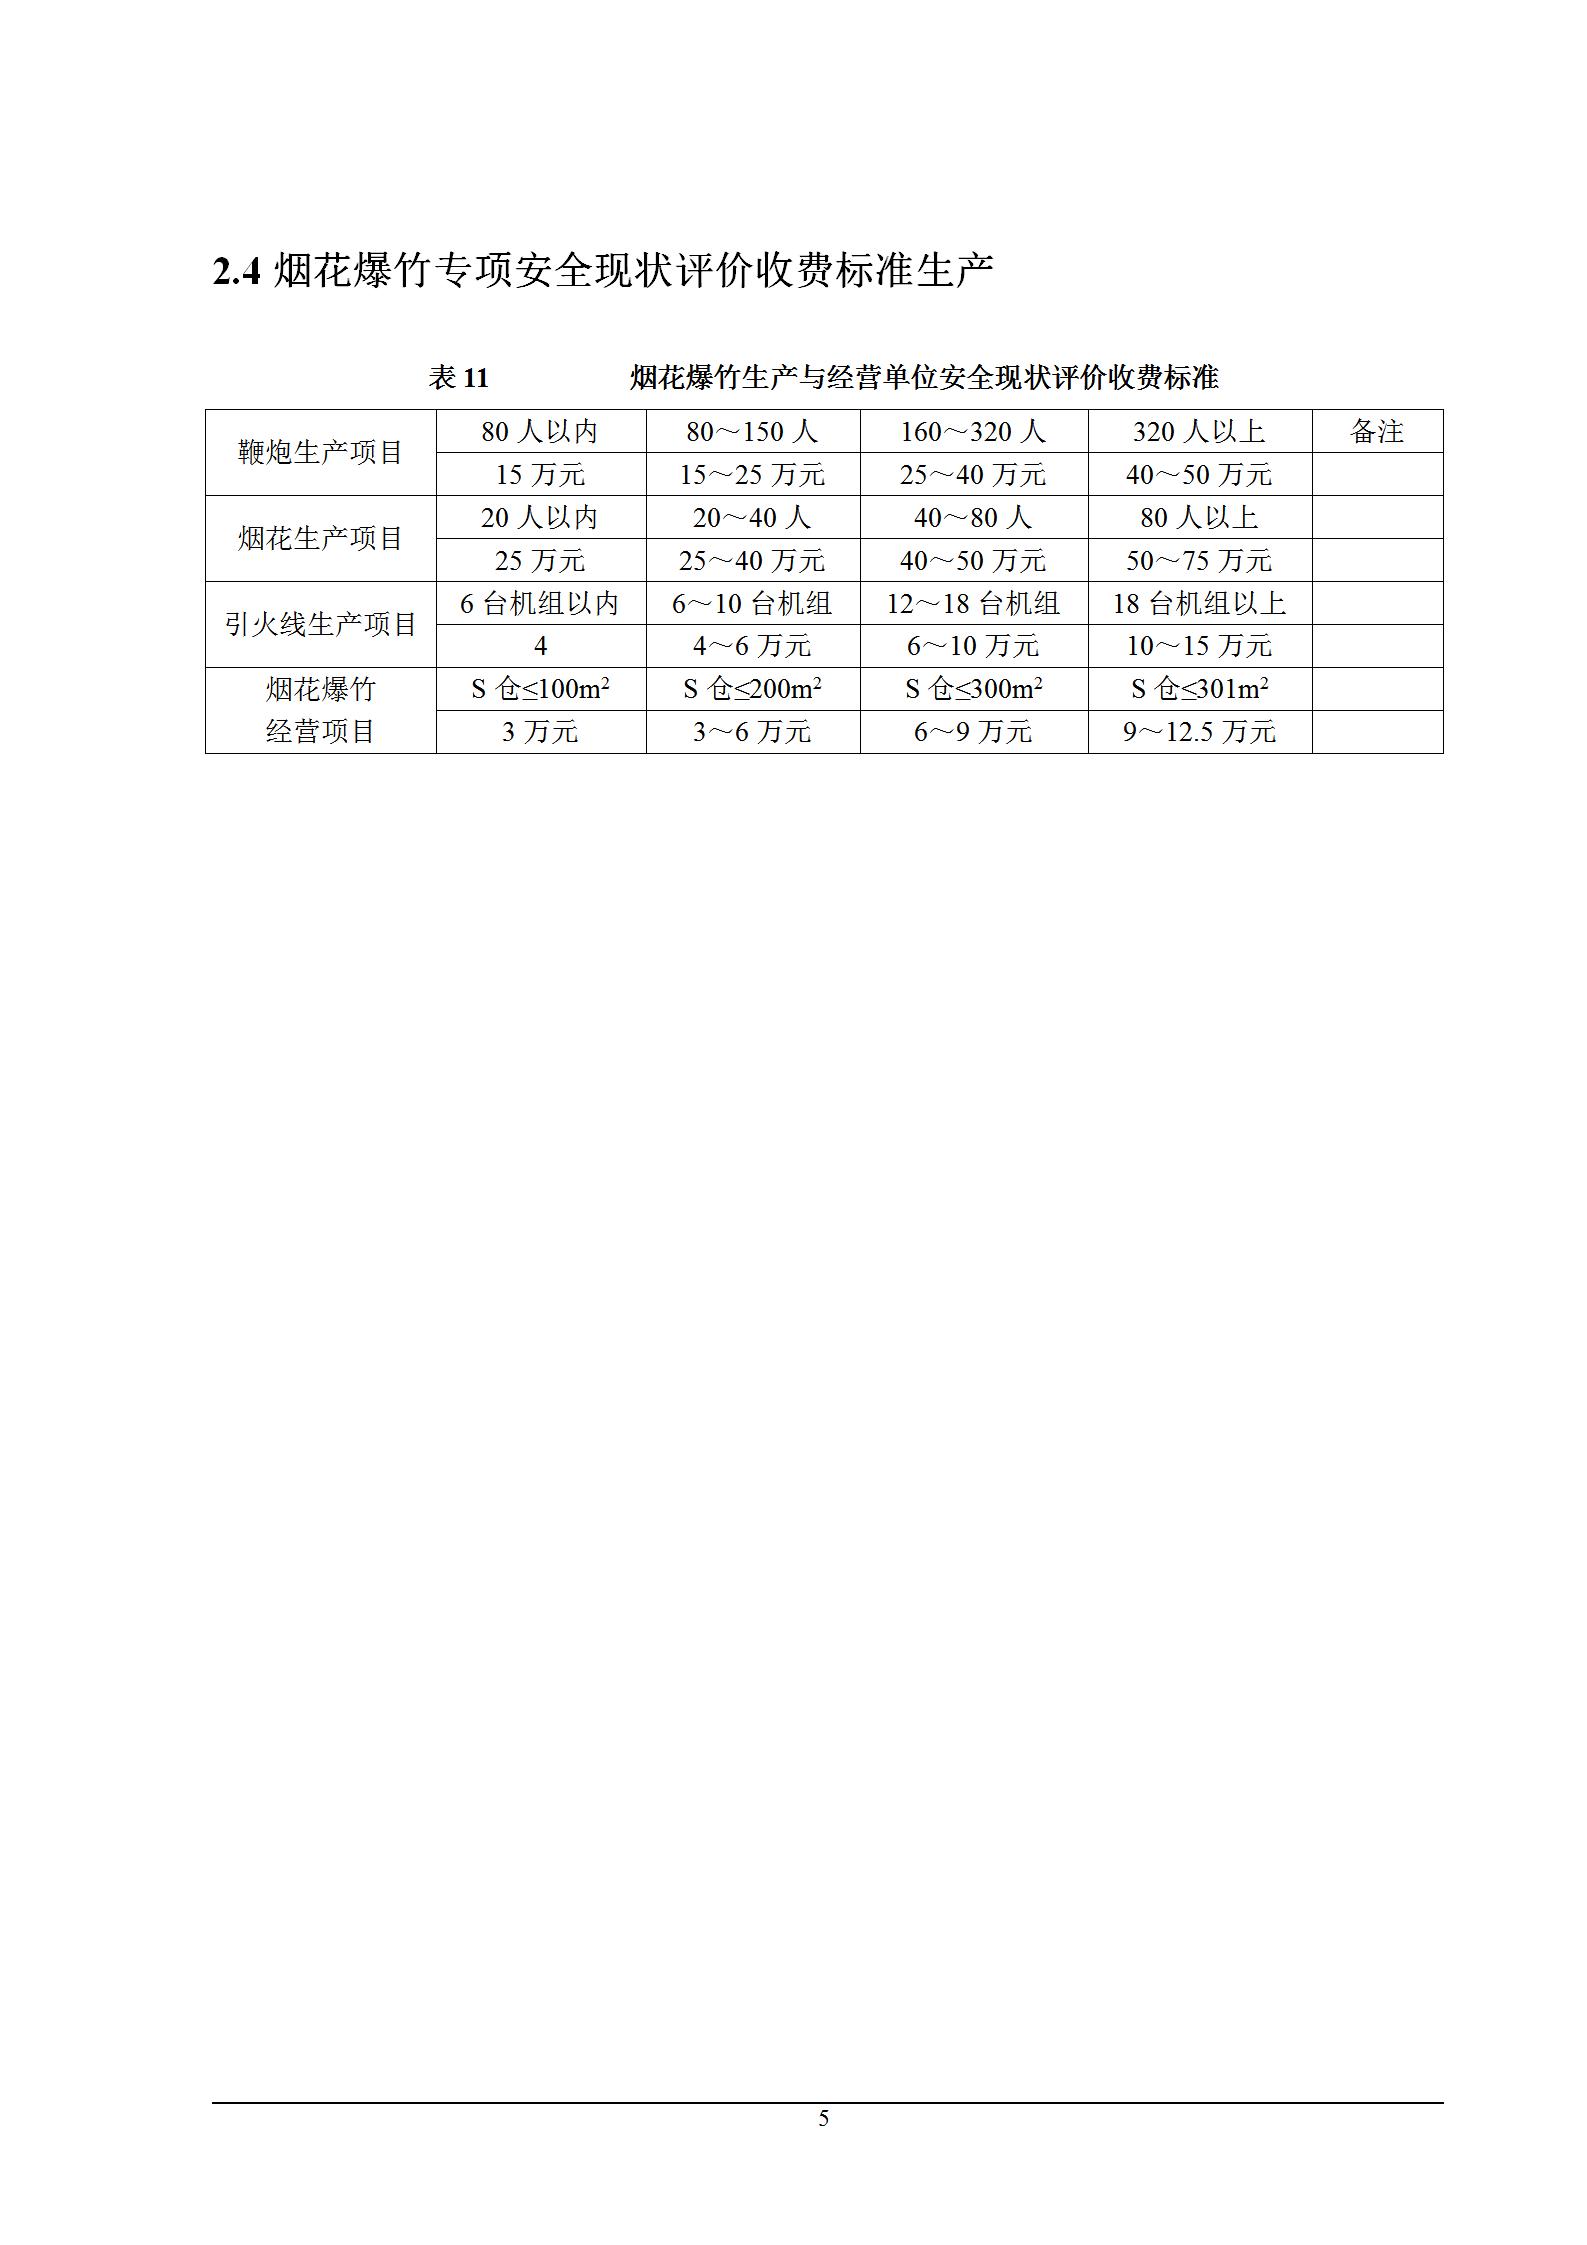 陕西省安全评价指导性收费标准_05.jpg